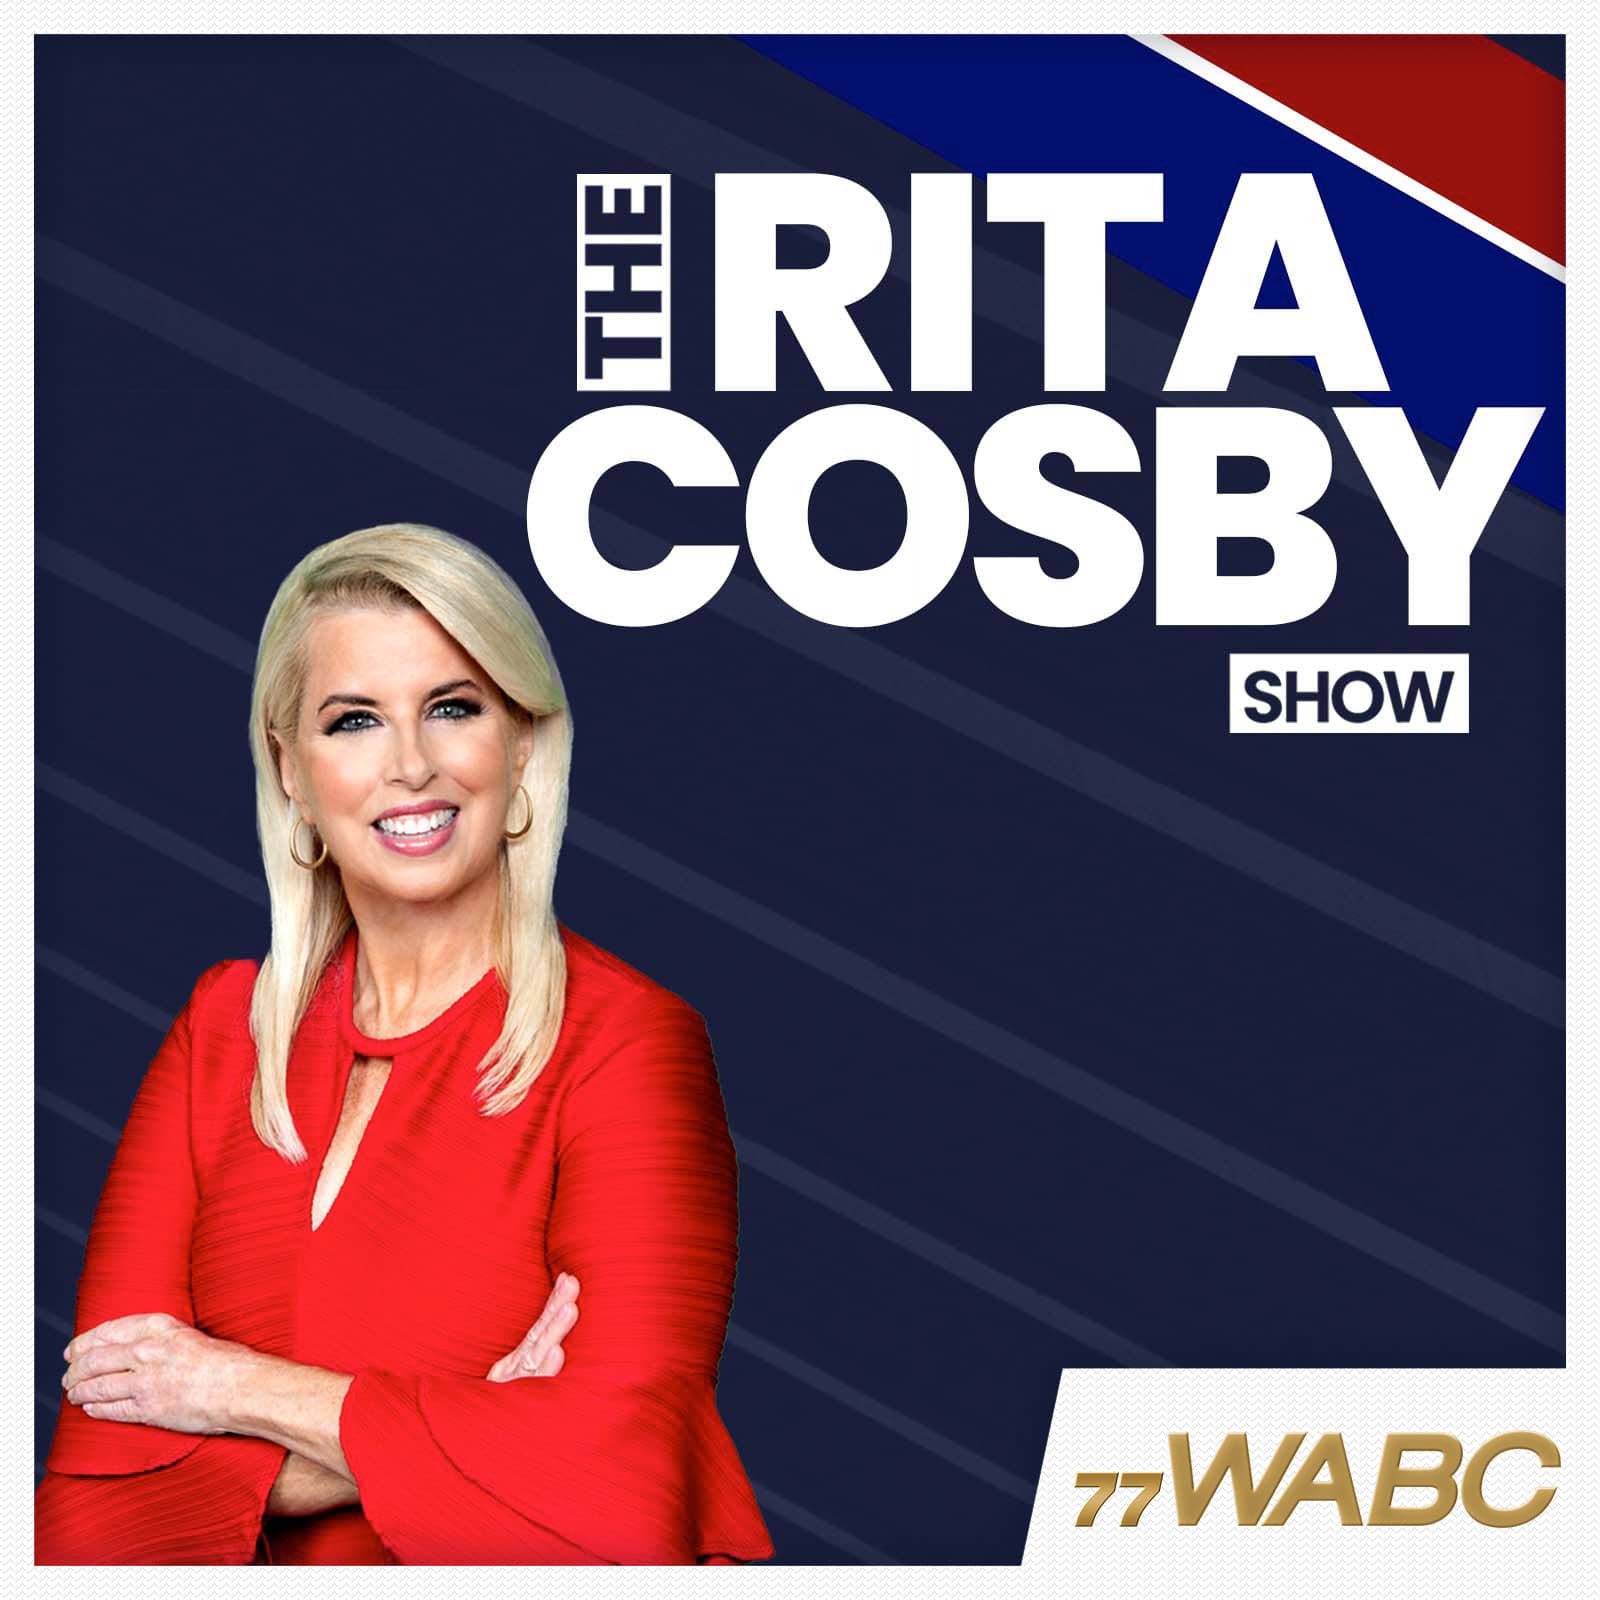 rita-cosby-podcast-new-logo-203